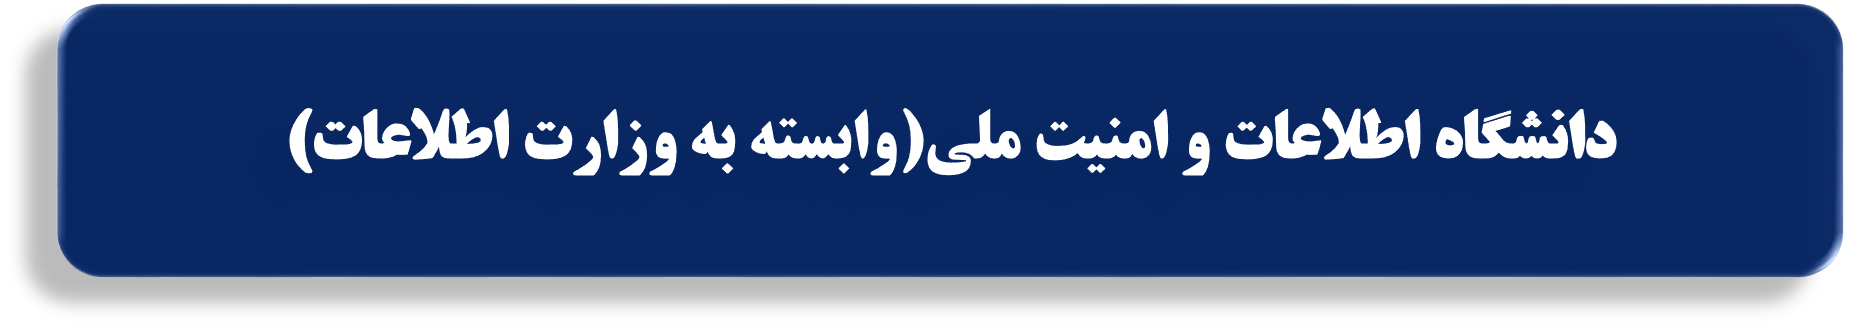 دانشگاه اطلاعات و امنیت ملی(وابسته به وزارت اطلاعات)